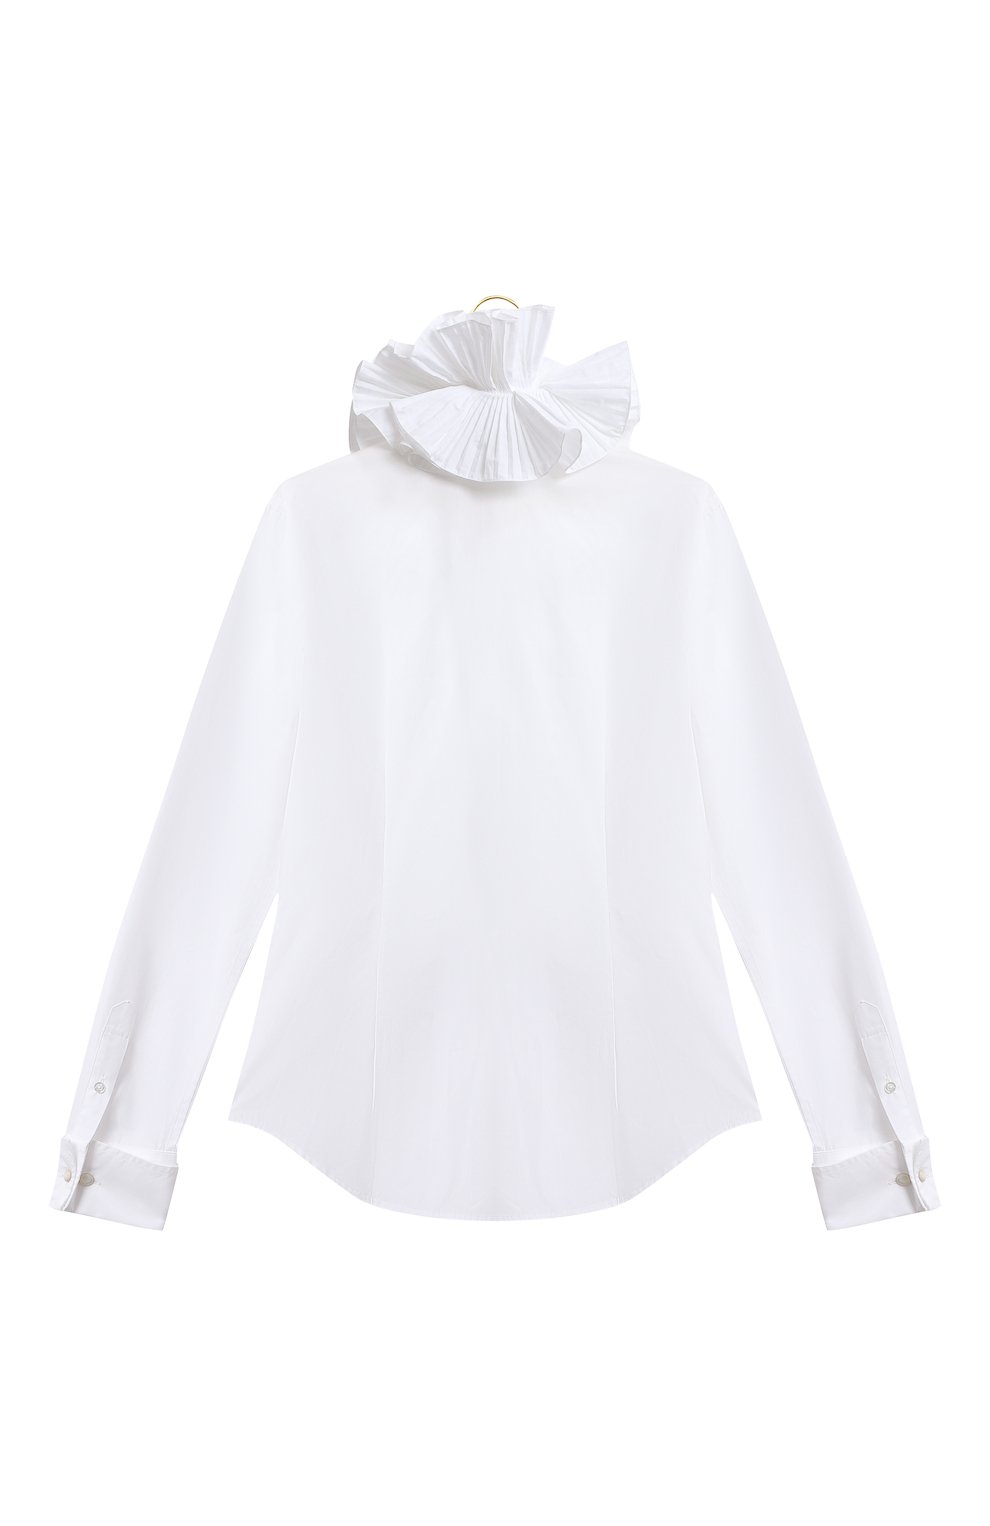 Хлопковая блузка | Ralph Lauren | Белый - 2